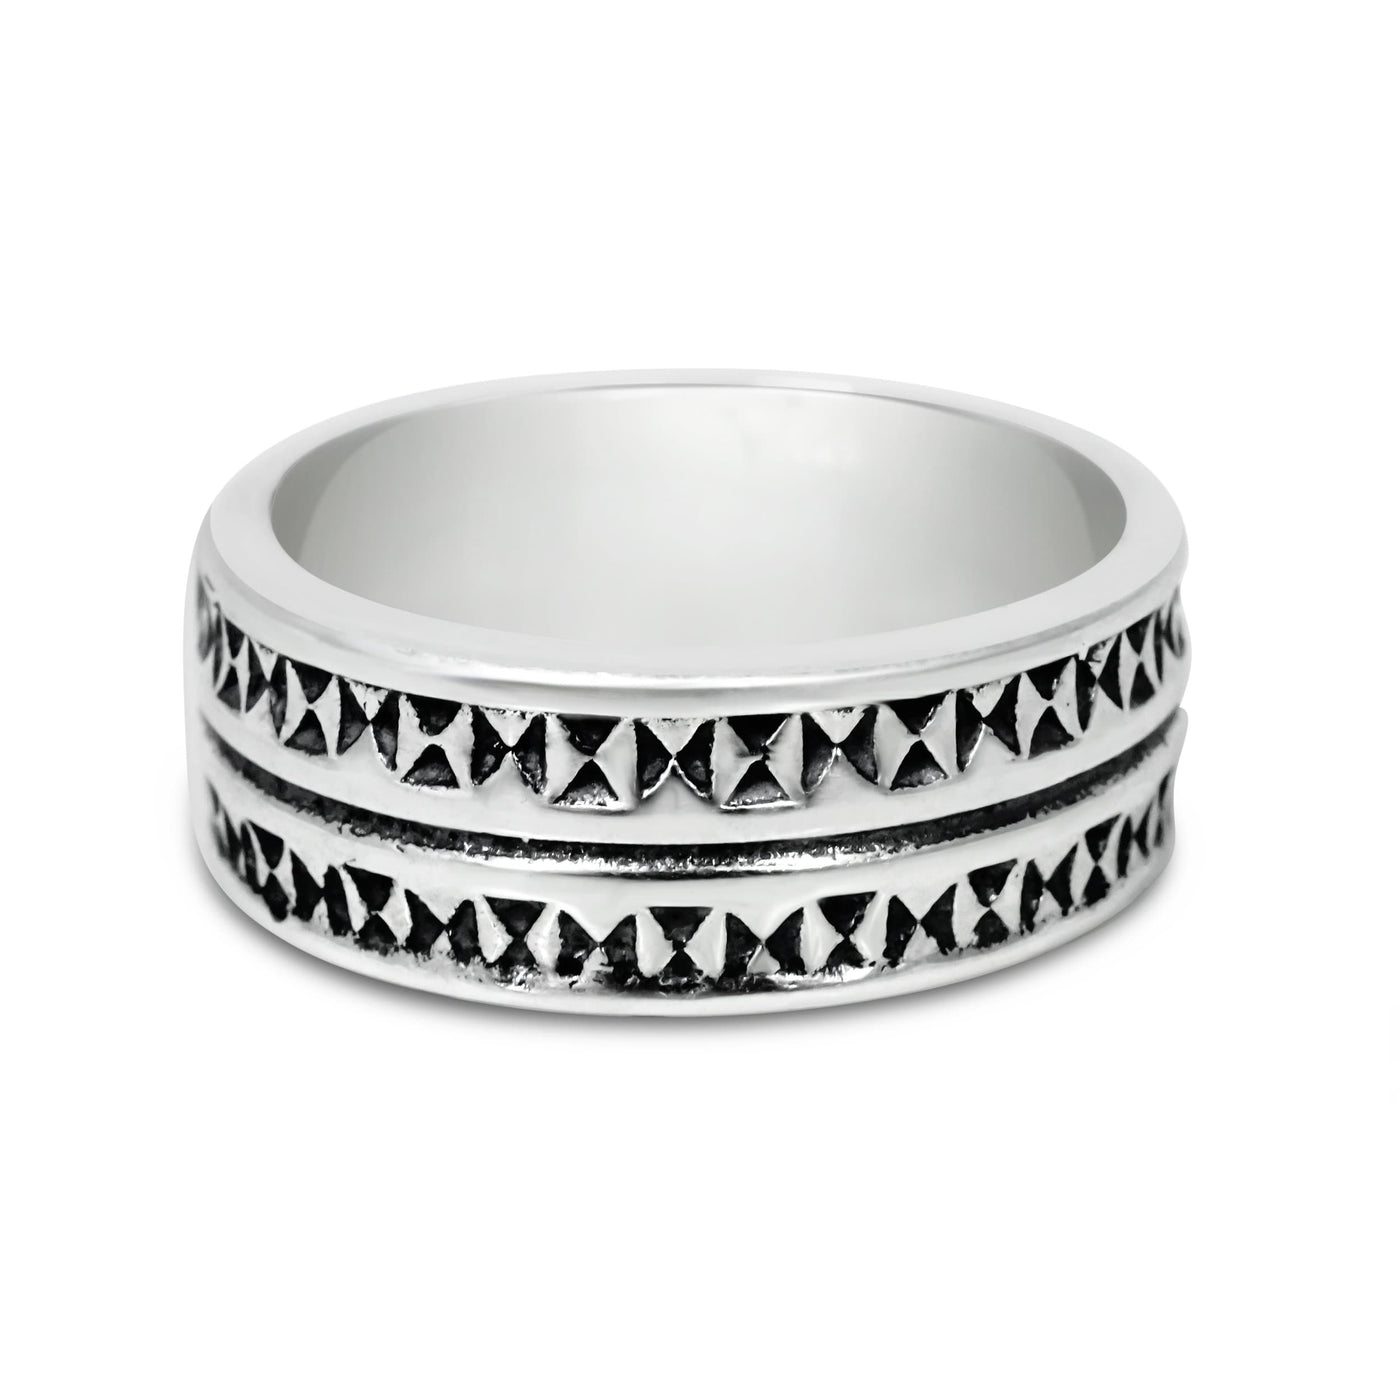 Sfacetatto - Girati Silver Rings for Men